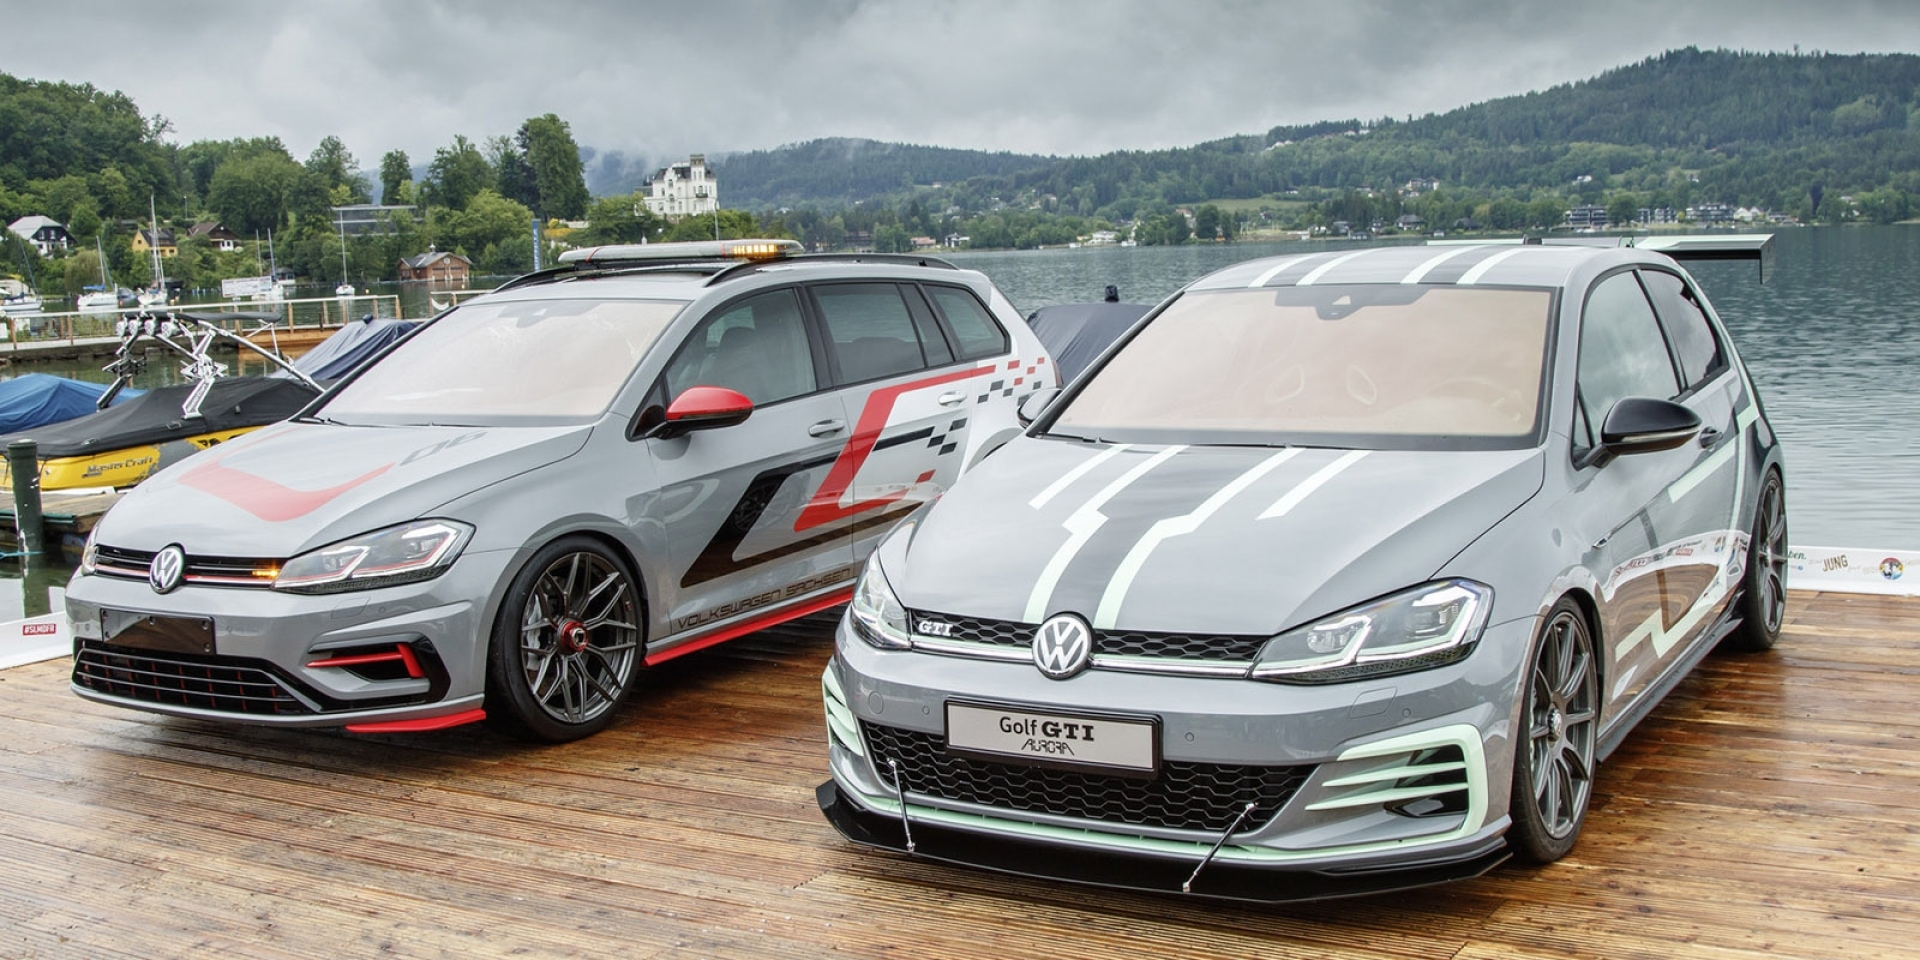 官方新聞稿。全球首演 Volkswagen最新全像3D投影技術 Golf GTI Aurora及FighteR 首次連袂於GTI盛會亮相